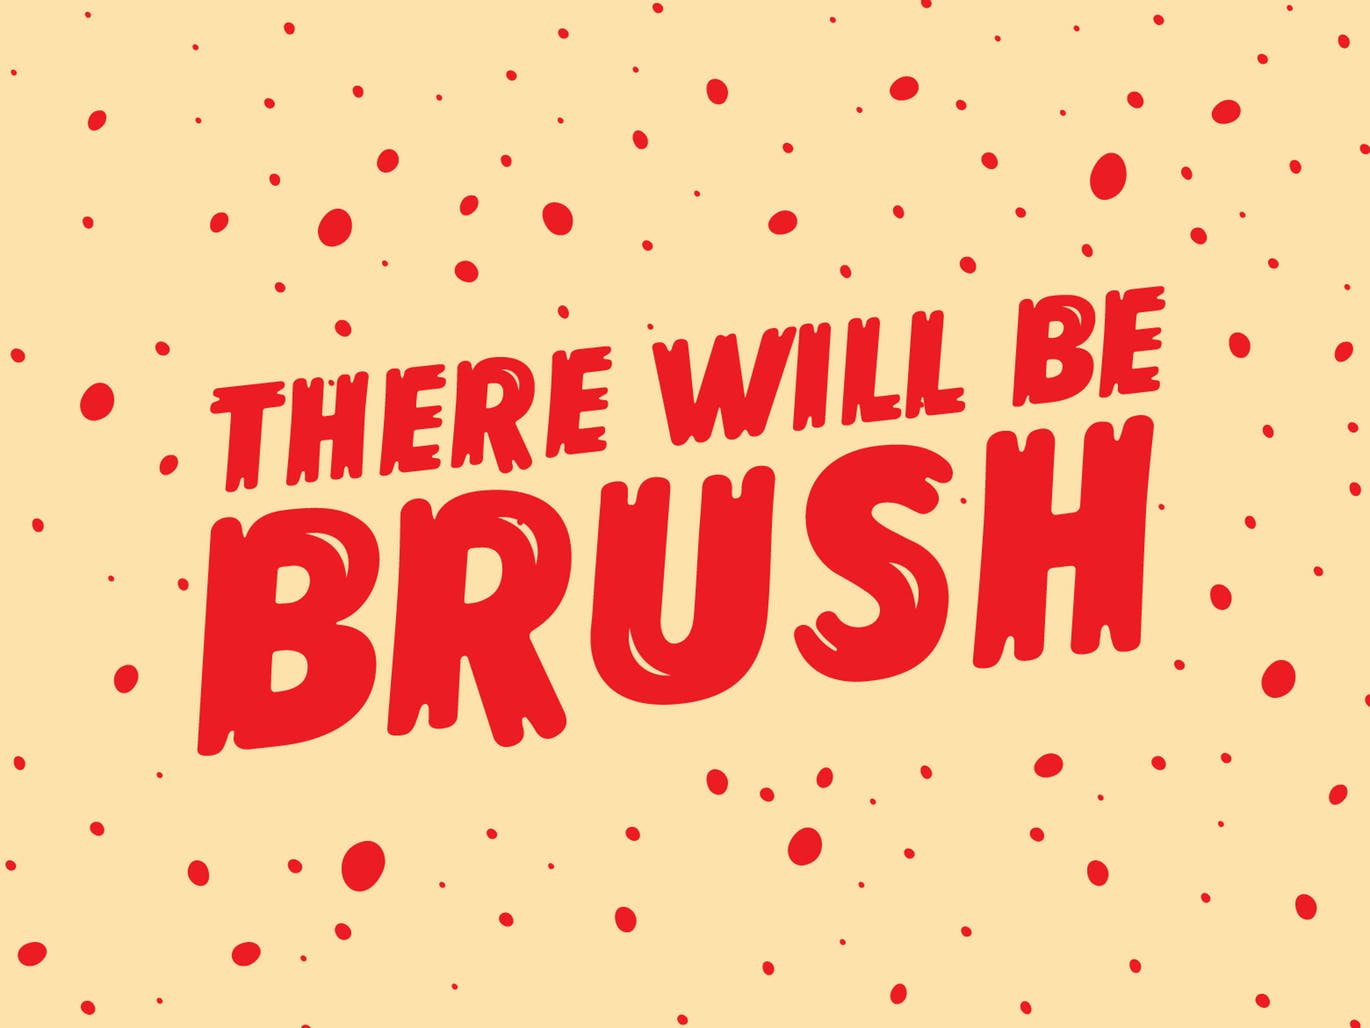 复古丹麦电影海报设计英文笔刷字体 Lonkie Brush插图14